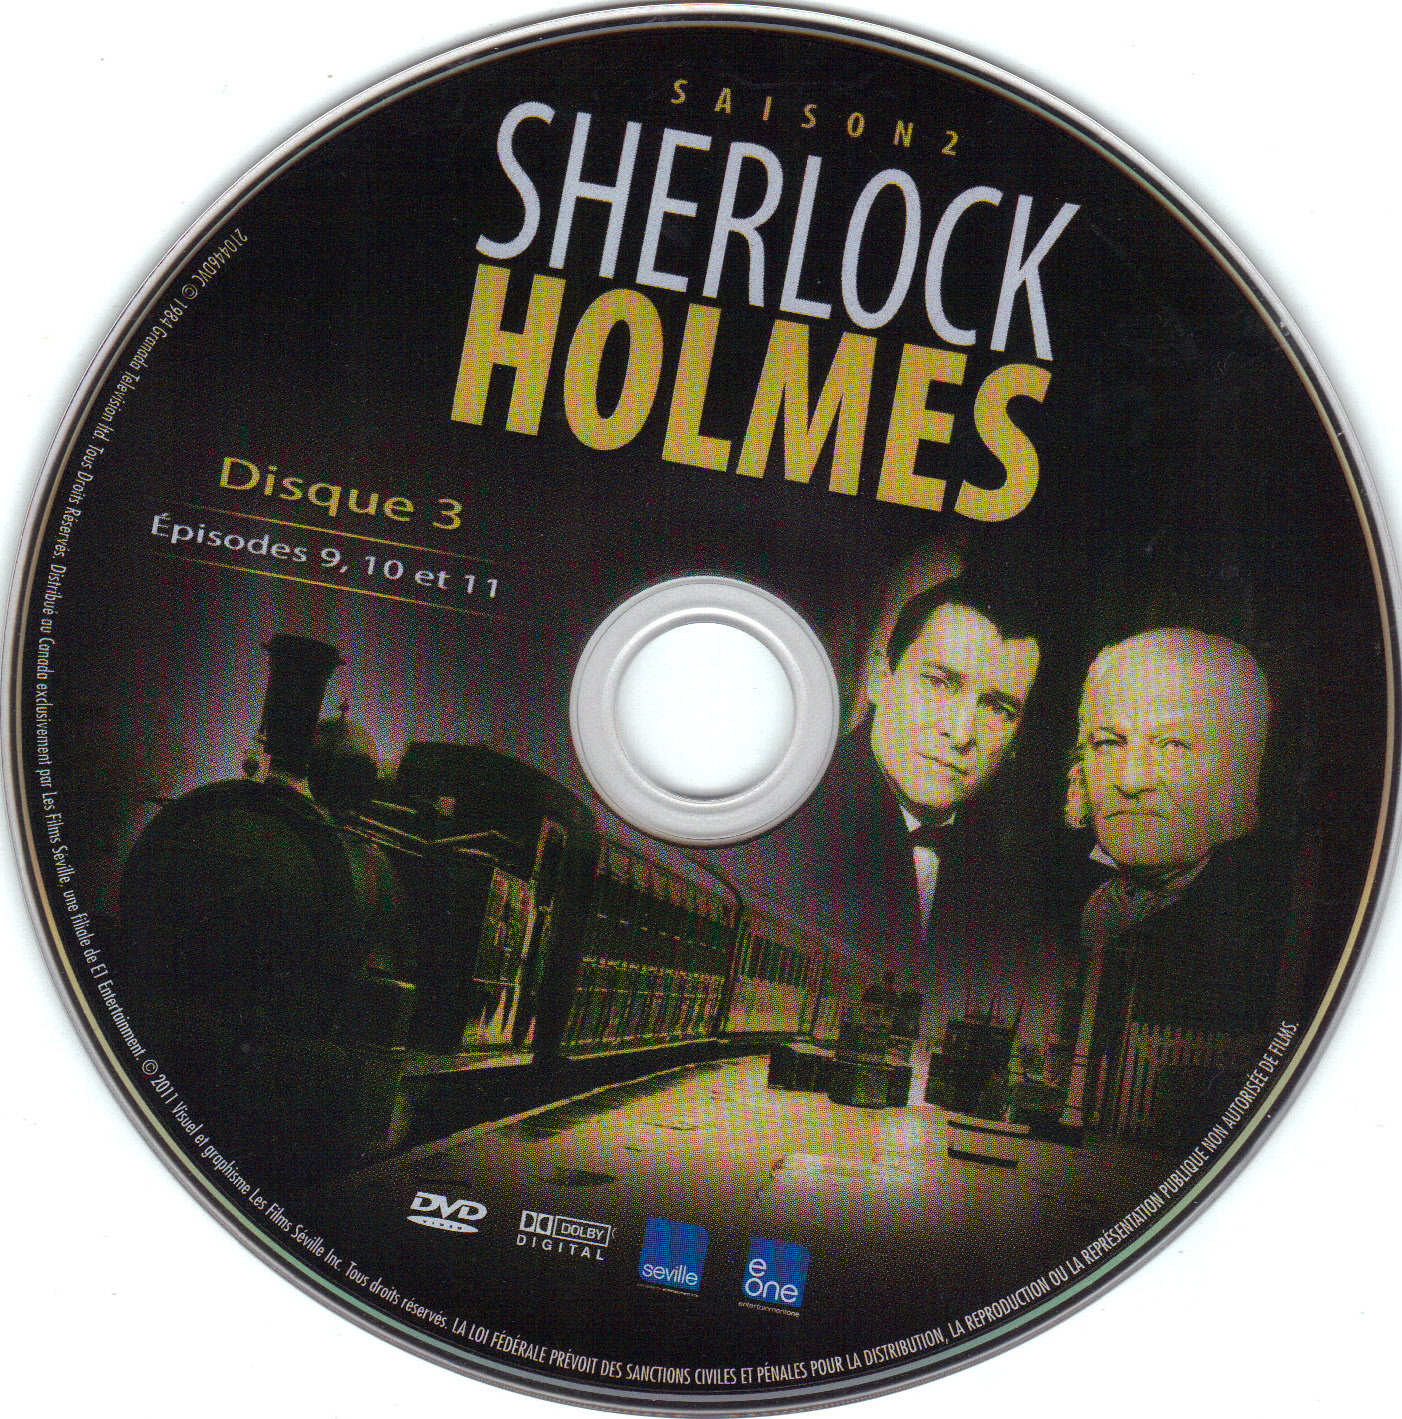 Sherlock Holmes Saison 2 Disc 3